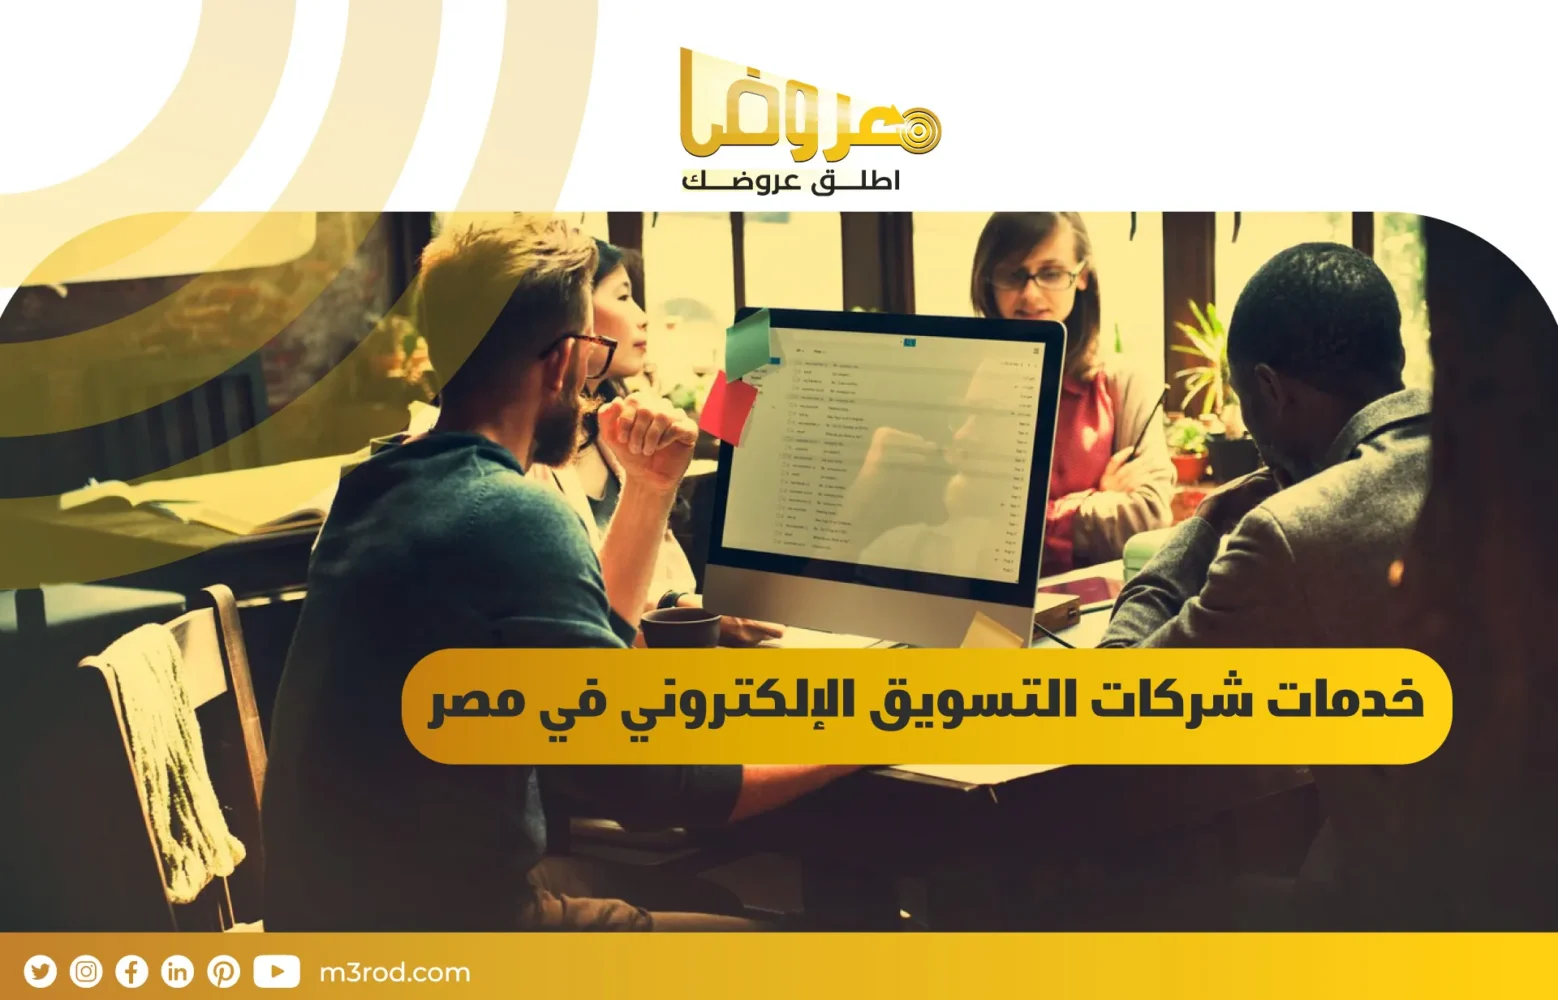 خدمات شركات التسويق الإلكتروني في مصر